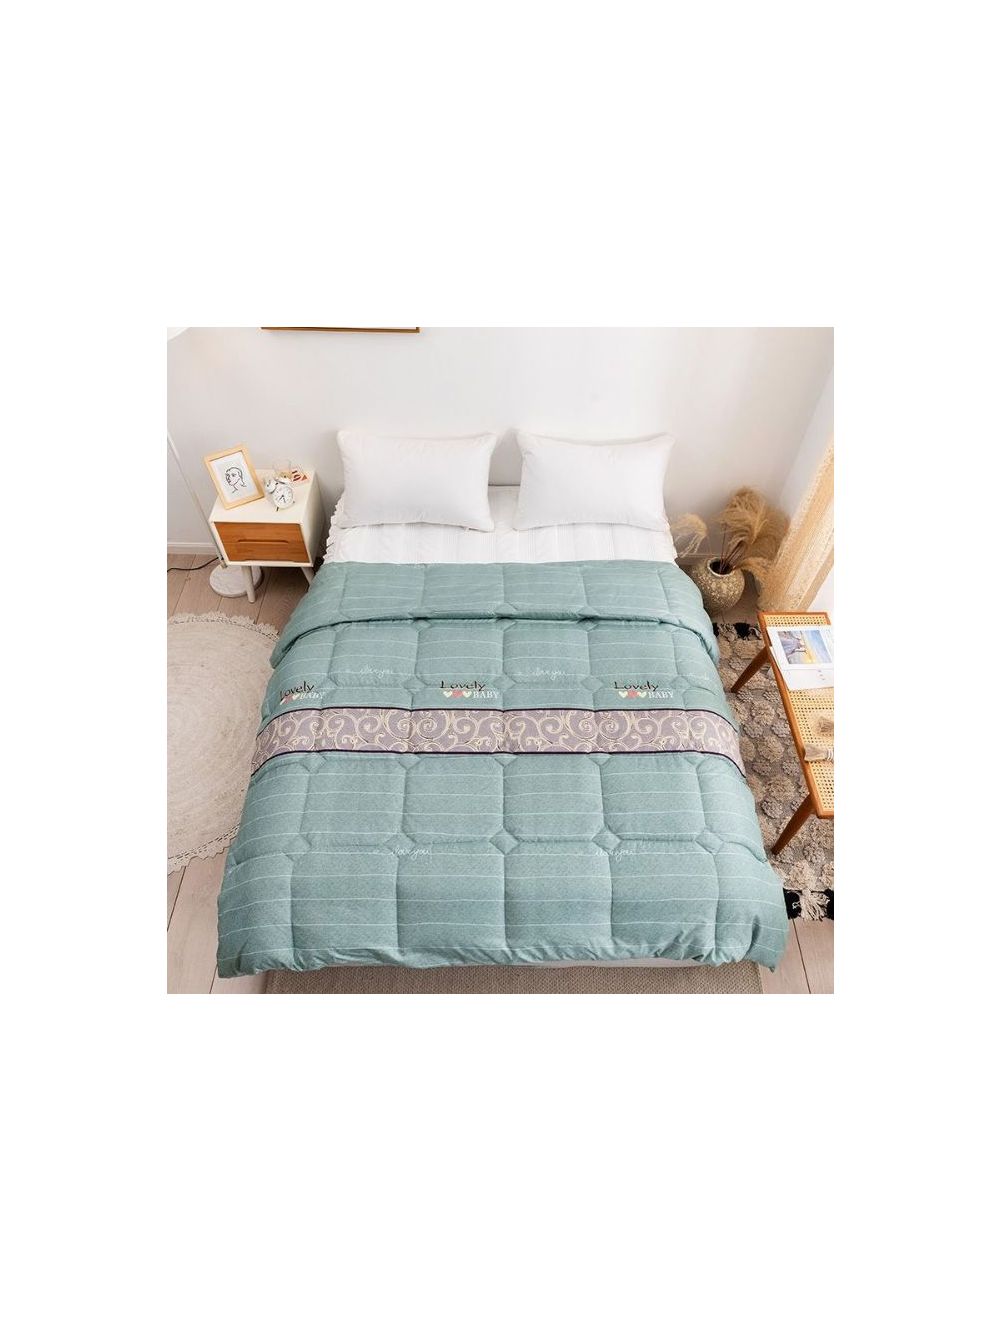 Rishahome Green Spring Single Size Comforter Microfiber Multicolour 150x200cm-GSPC0001